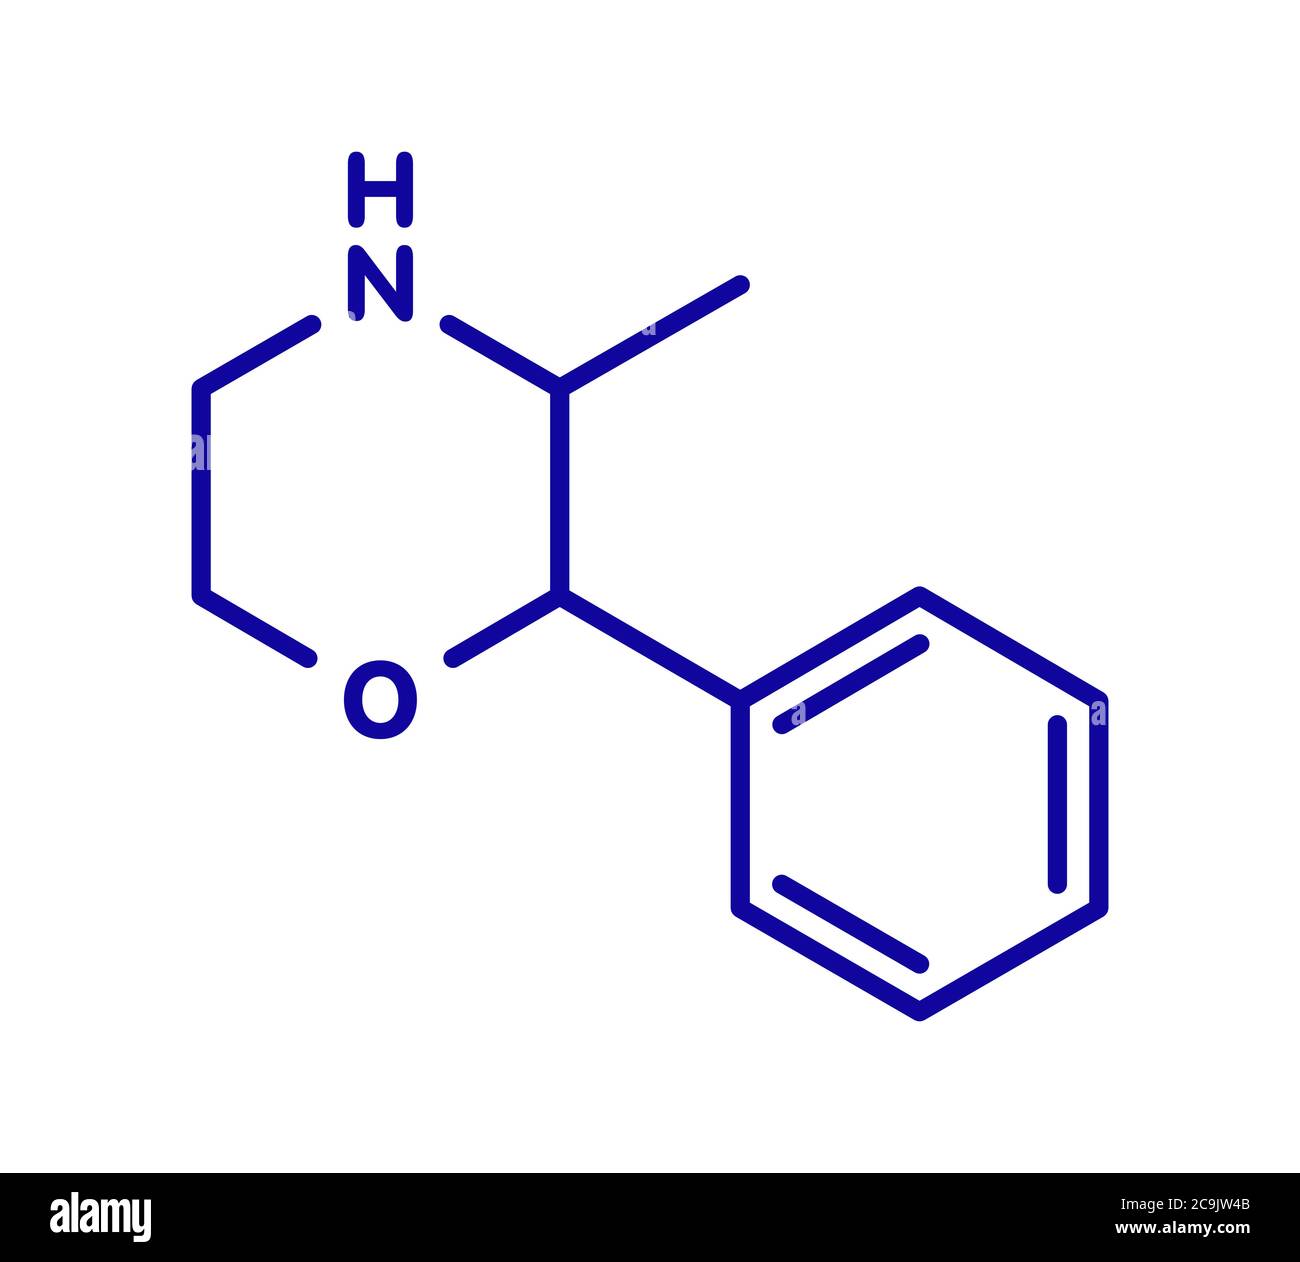 Phenmetrazine stimulant drug molecule (amphetamine class). Used as stimulant and appetite suppressant. Blue skeletal formula on white background. Stock Photo